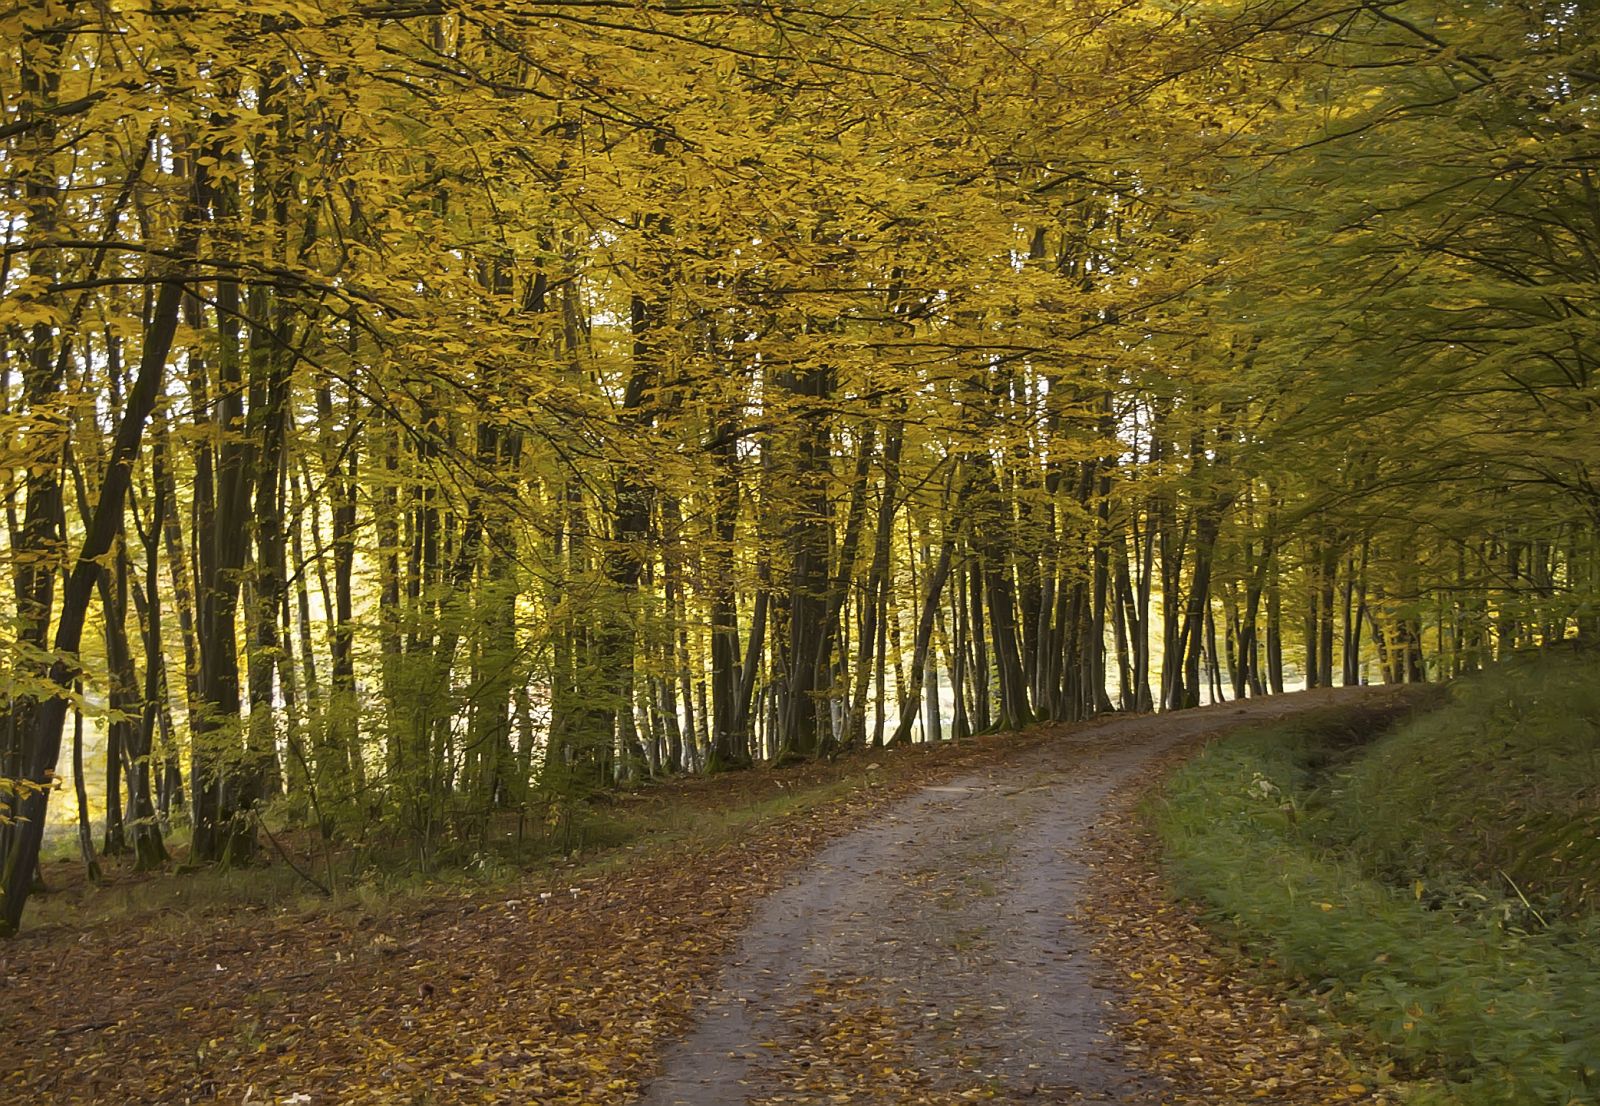 Camino en un bosque en pleno otoño.